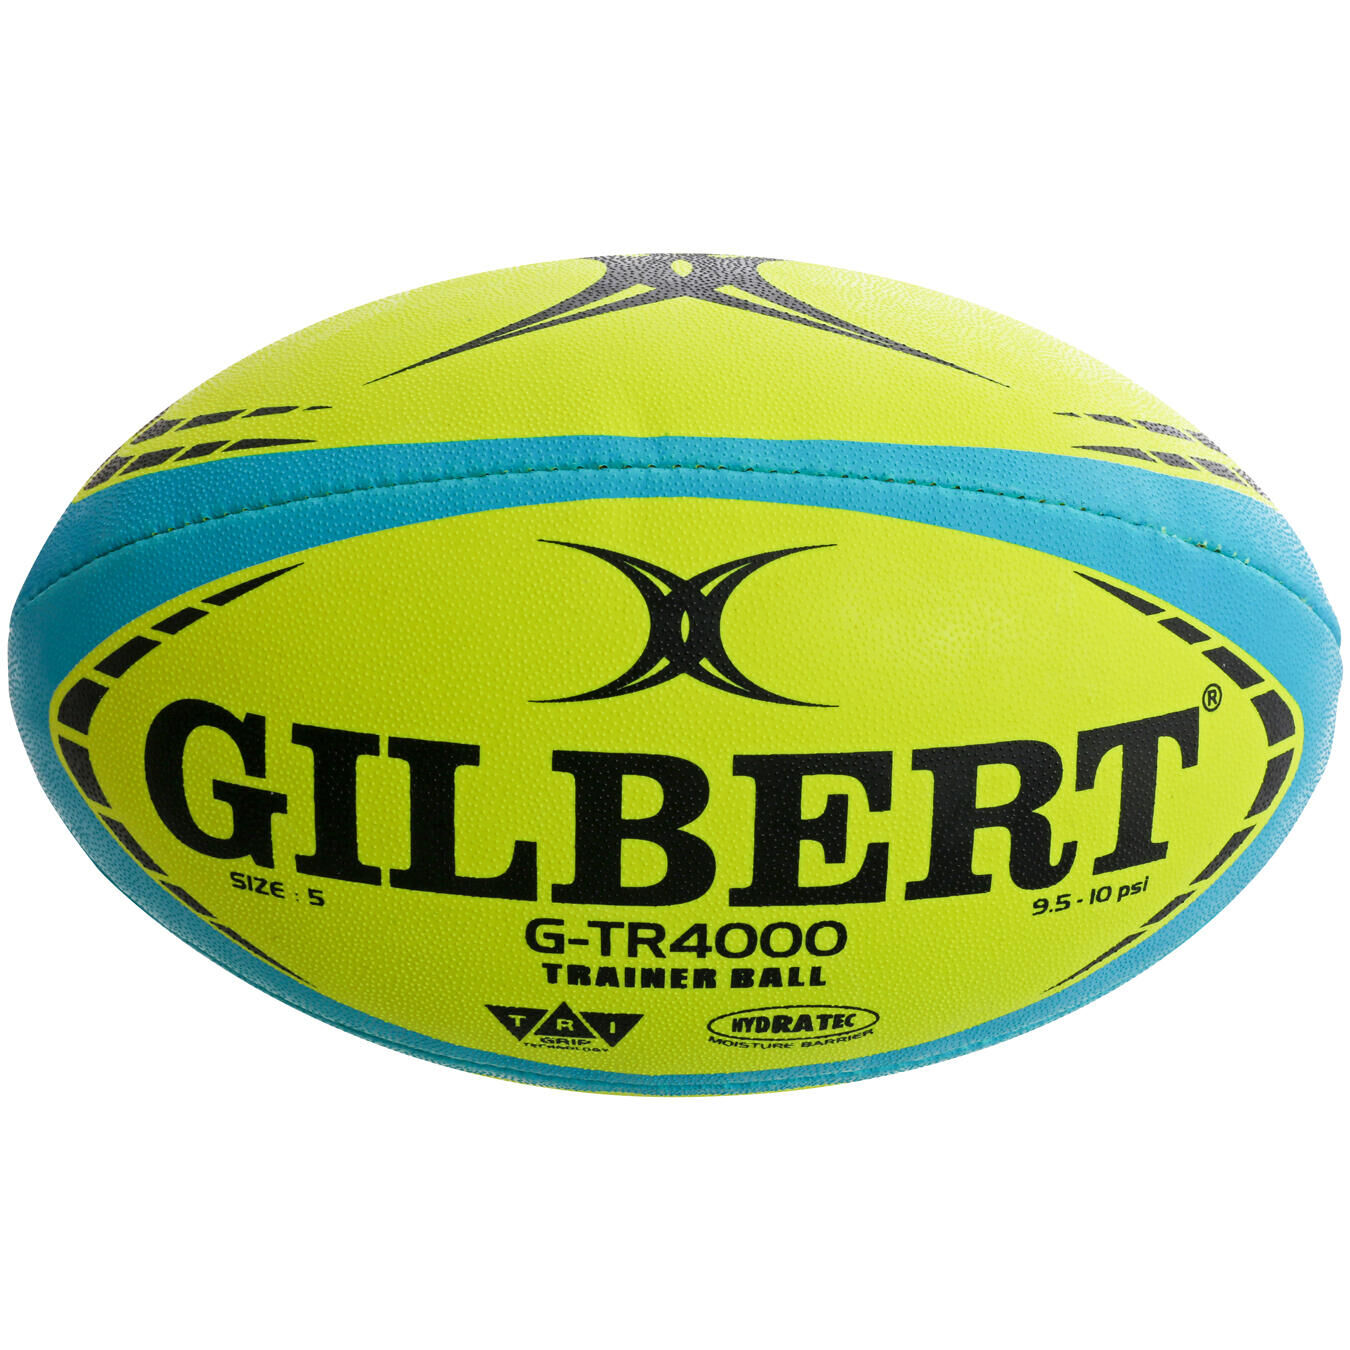 GILBERT G-TR4000 Training Ball - White